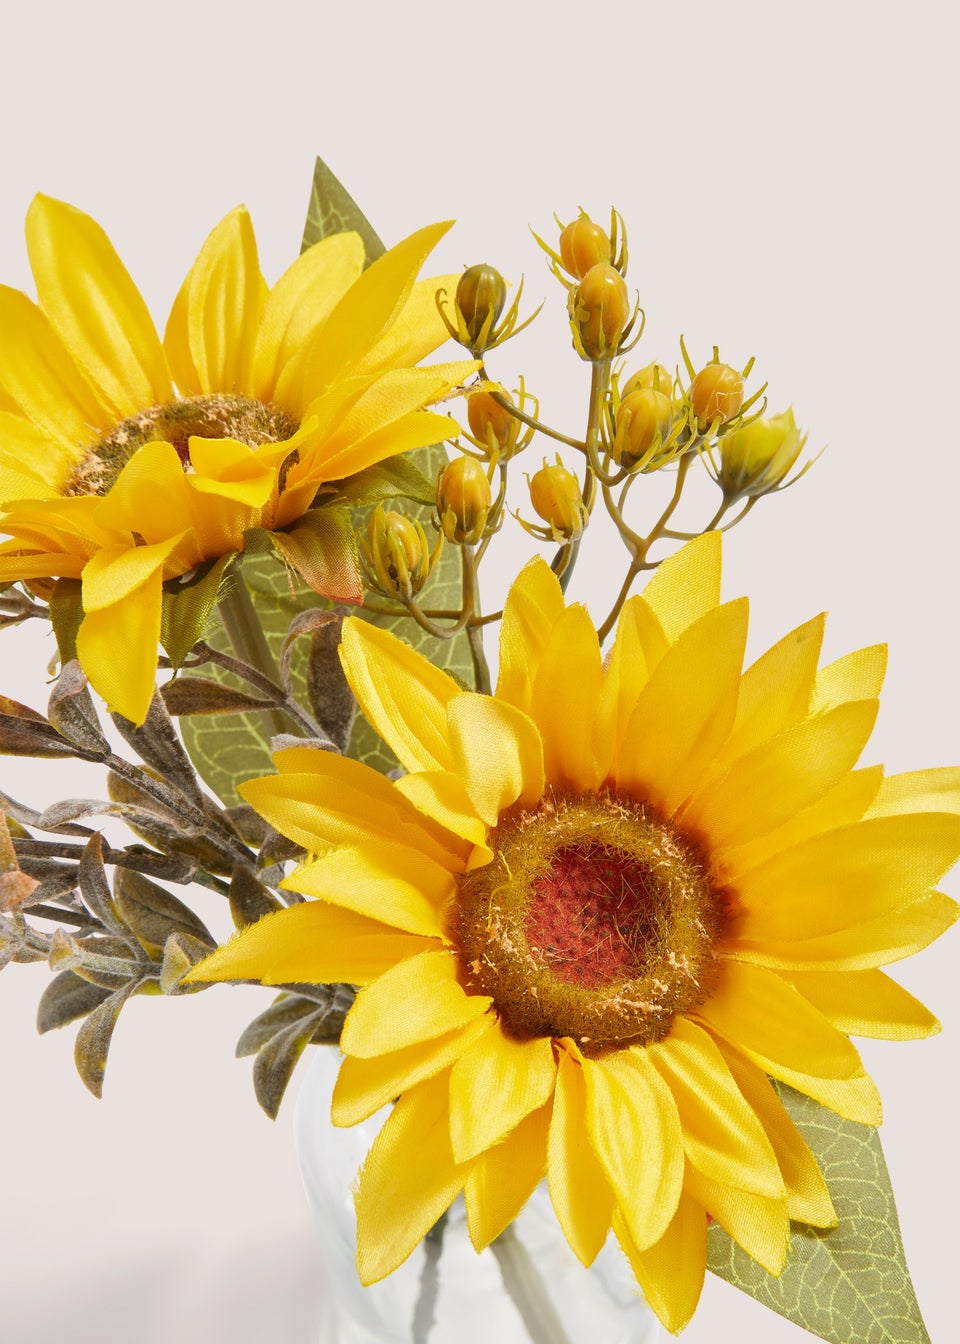 Mini Sunflowers in Glass Vase (22cm x 18cm x 18cm)